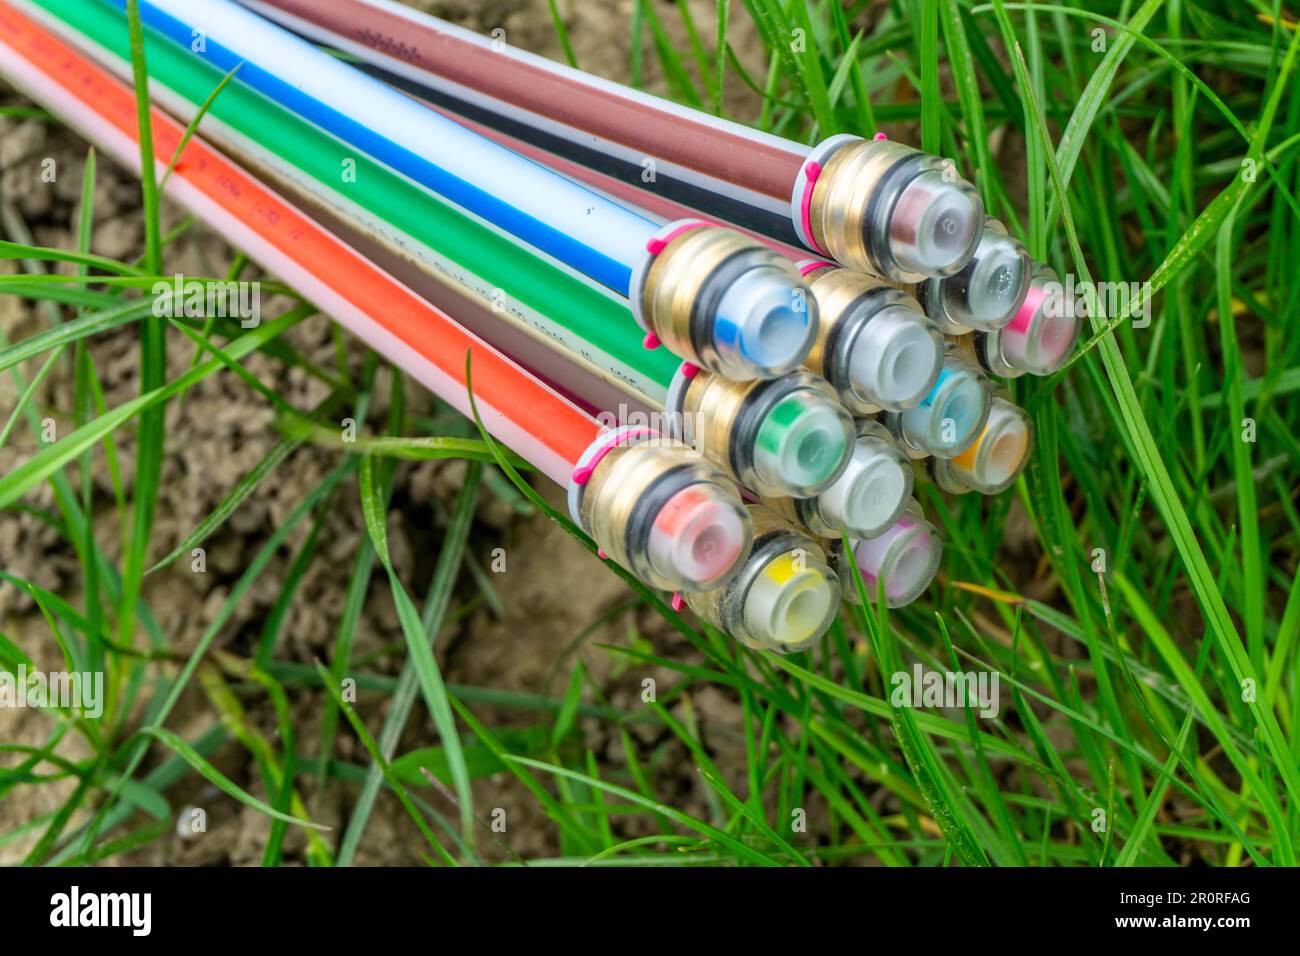 Câble à fibre optique, fraîchement posé le long d'une voie de campagne, fourniture d'Internet rapide dans les zones rurales, Mülheim an der Ruhr, NRW, Allemagne Banque D'Images